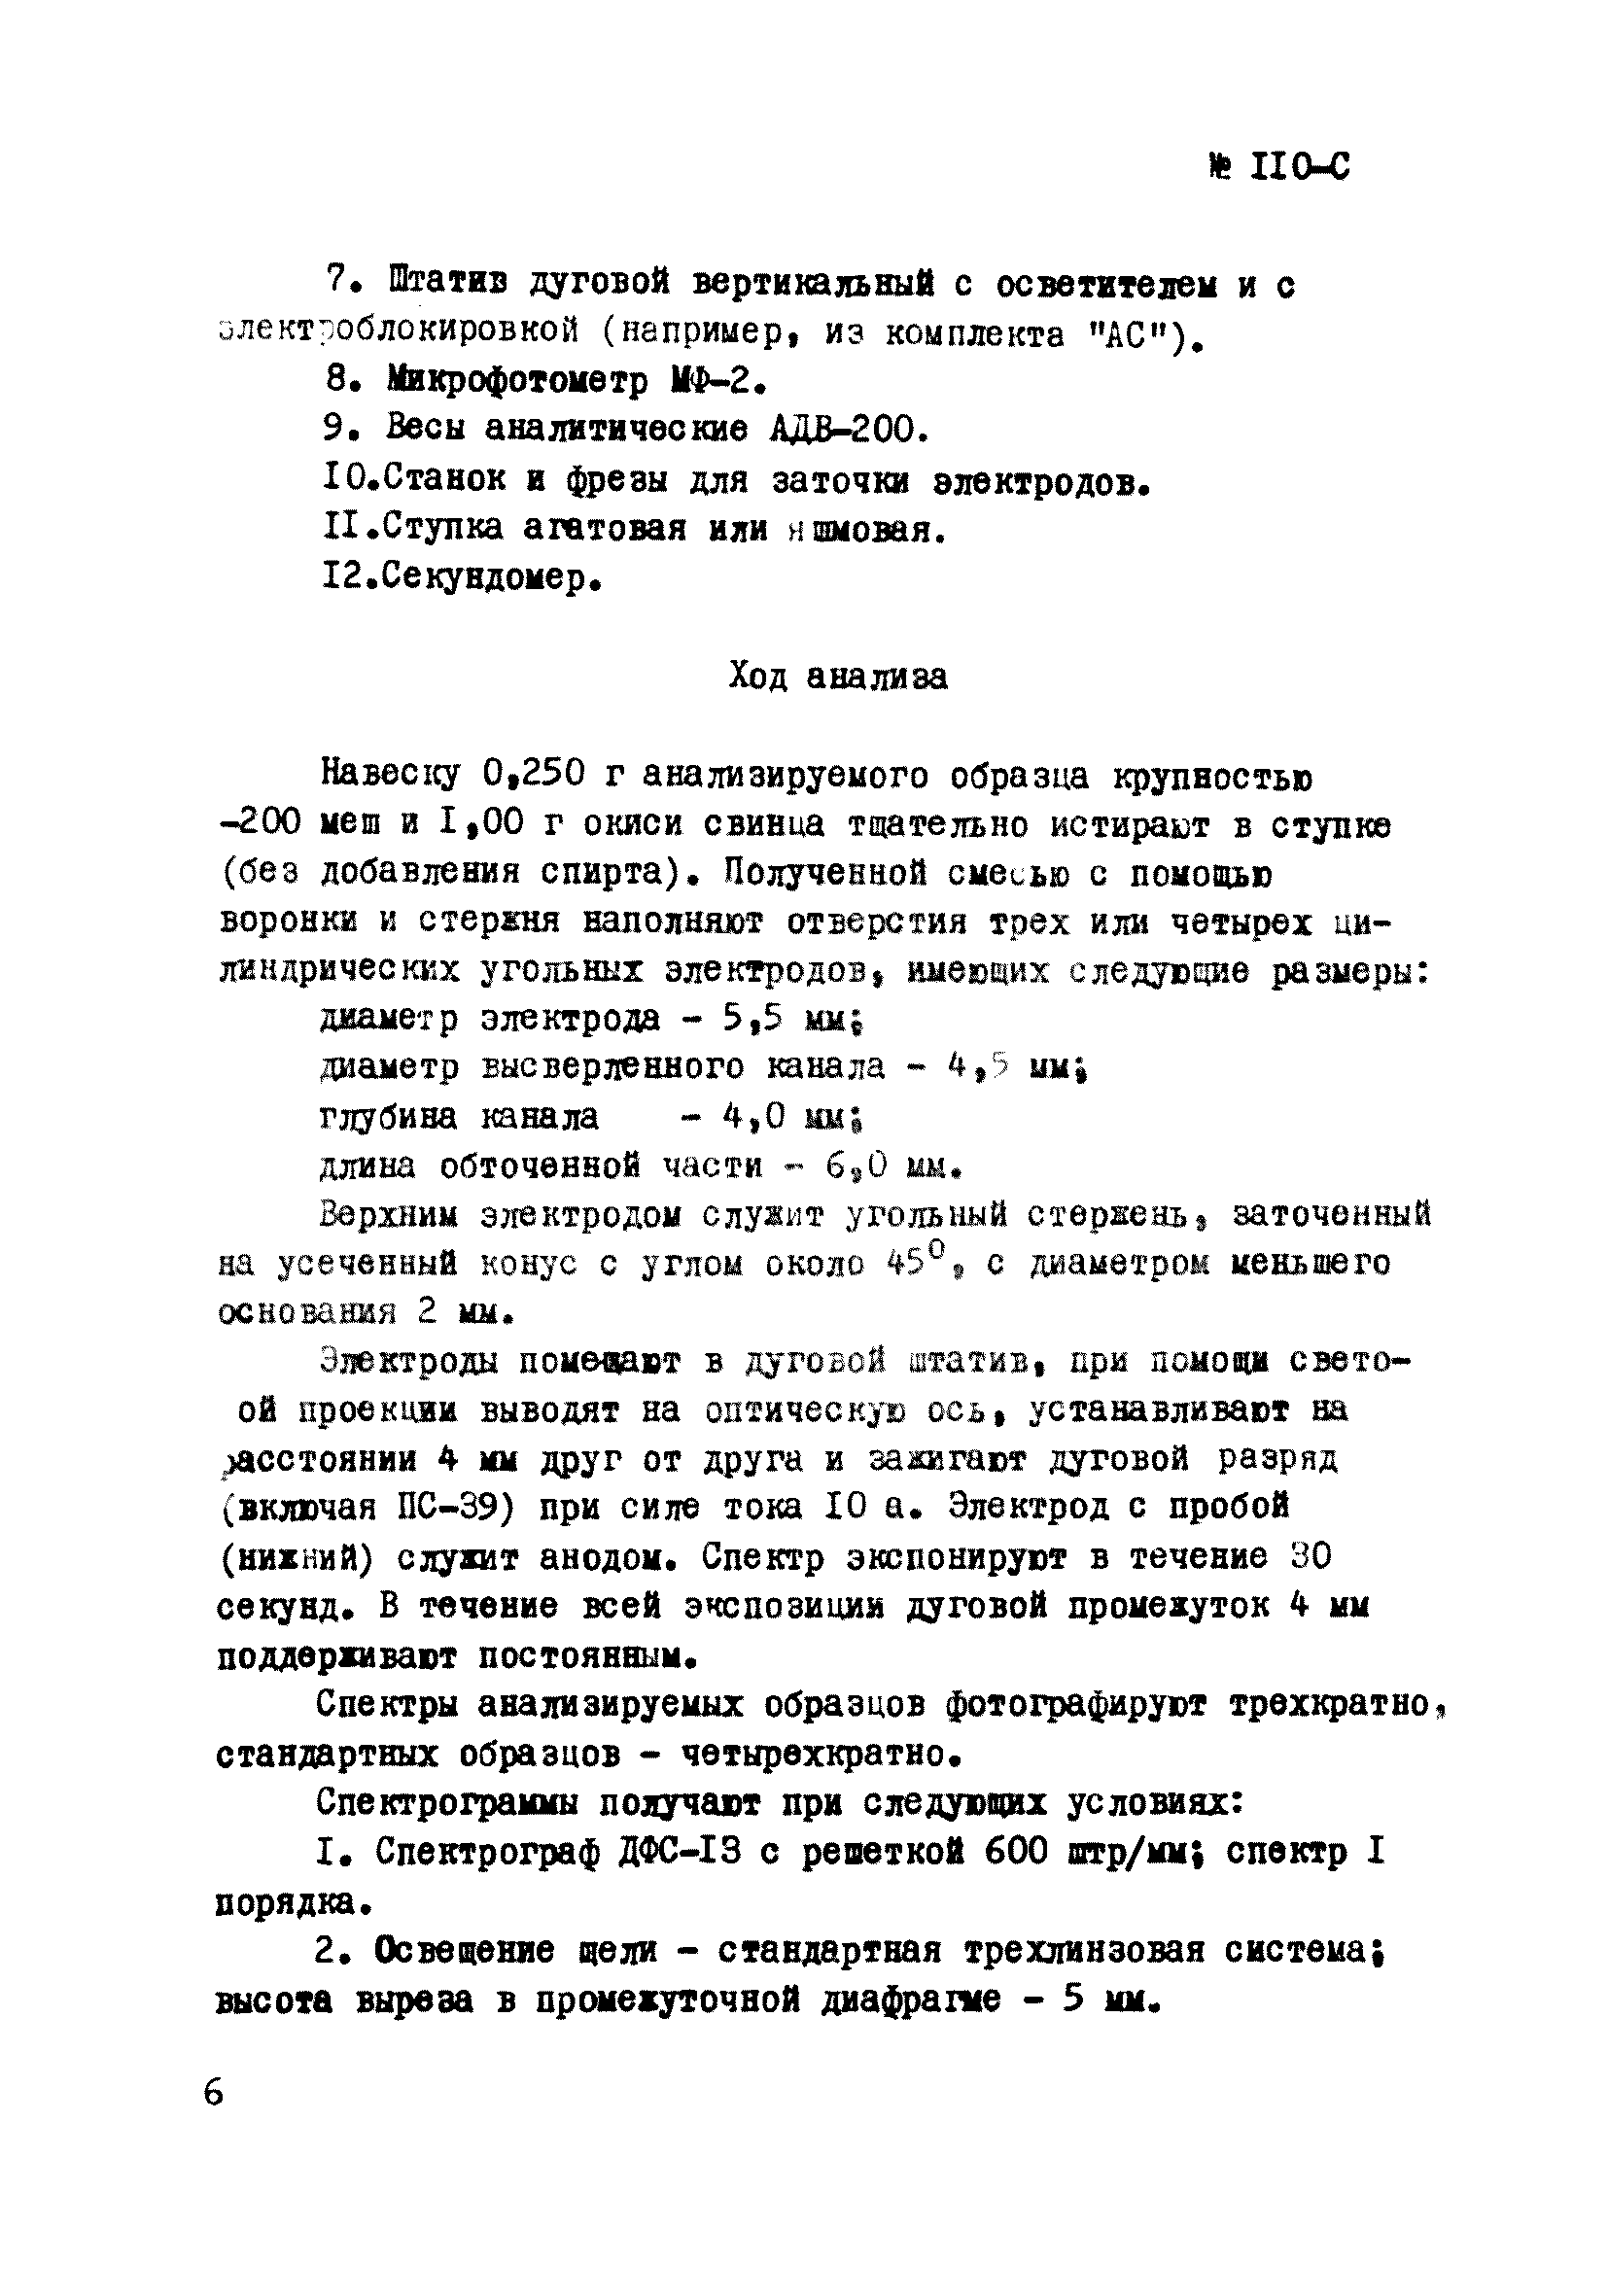 Инструкция НСАМ 110-С